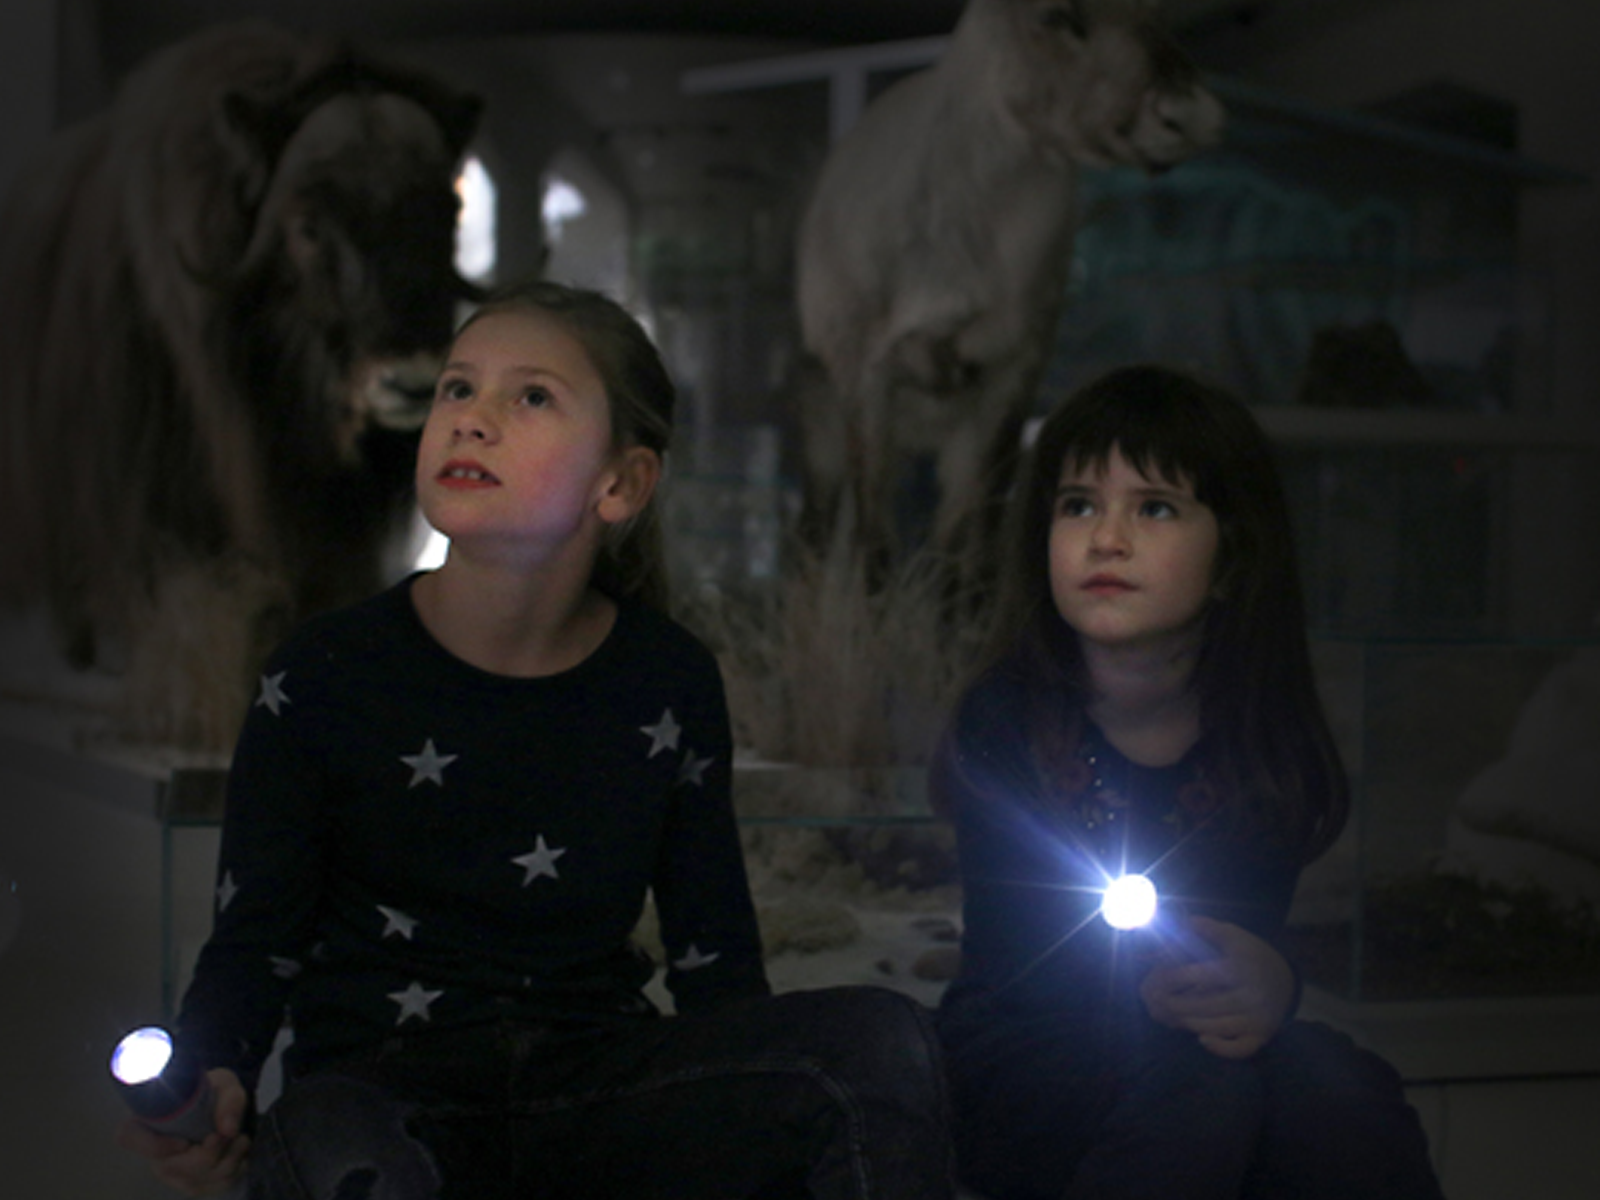 Das Bild zeigt zwei Kinder mit Taschenlampen. Sie schauen nach oben. Das Licht ist dunkel.